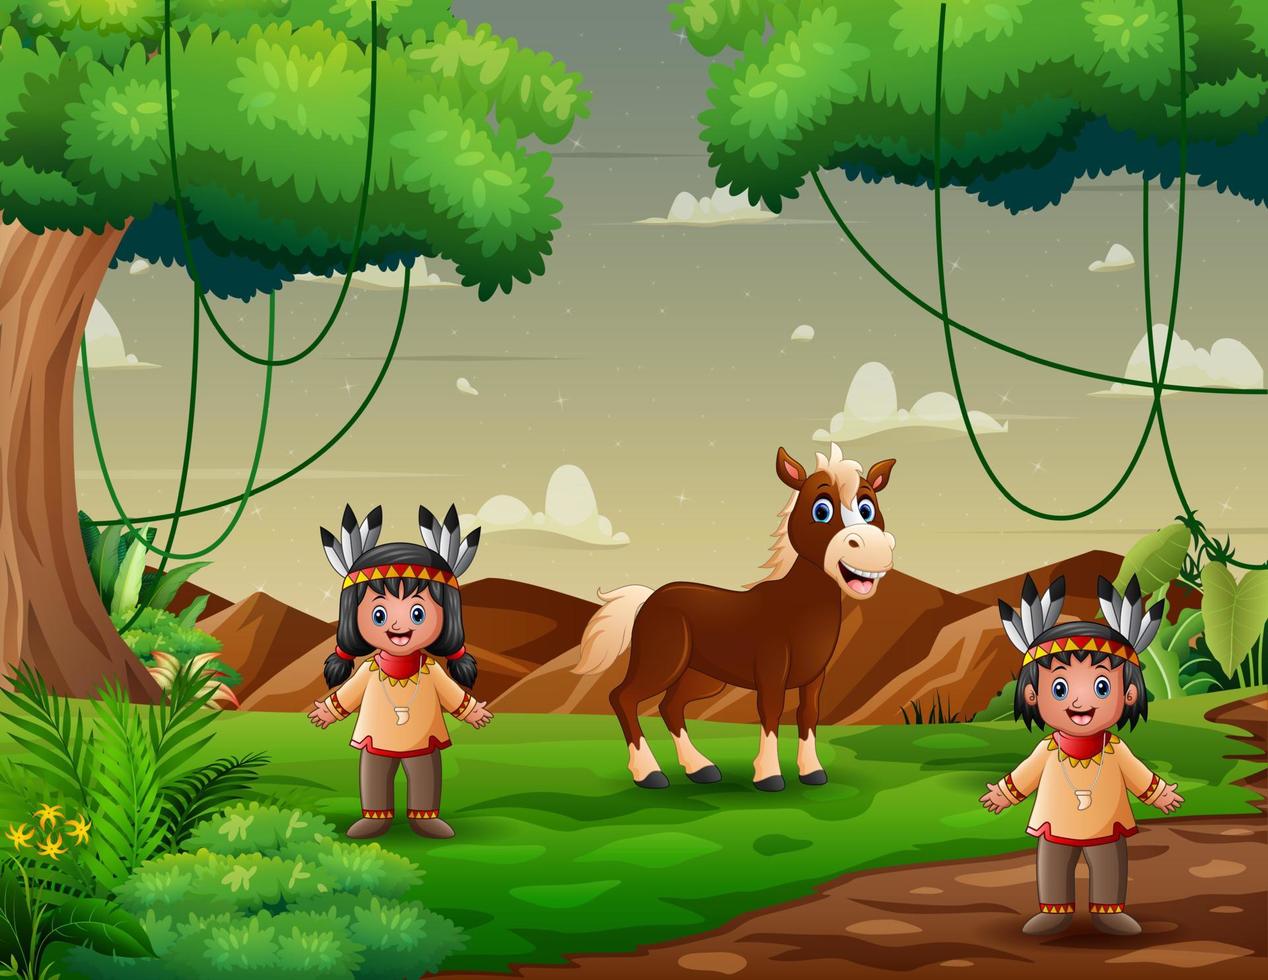 enfants indiens amérindiens avec un cheval dans le champ vert vecteur